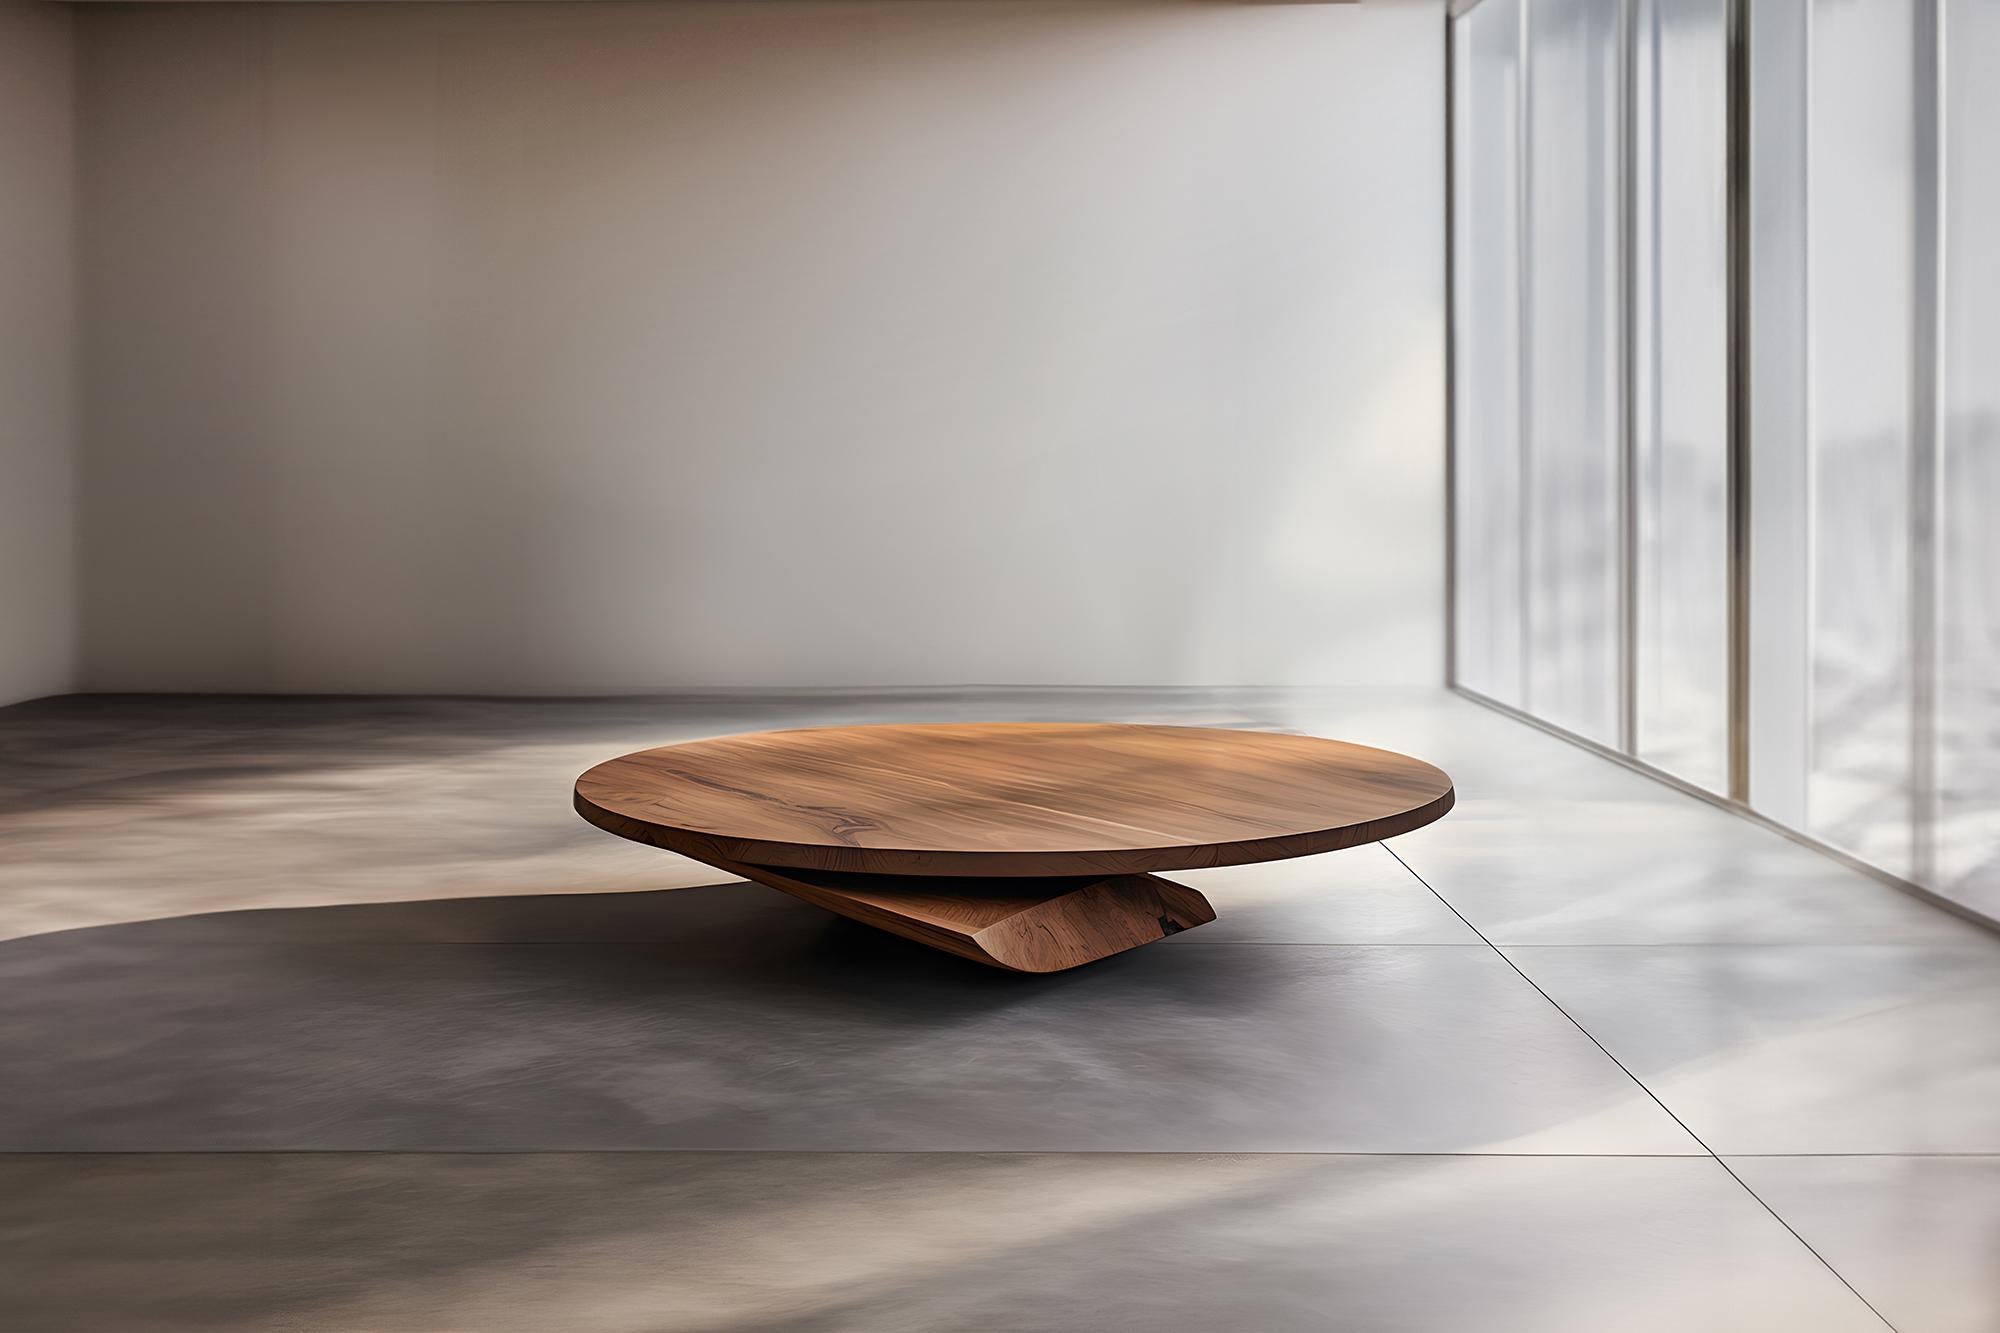 Mesa de centro escultural de madera maciza, Mesa de centro Solace S51     por Joel Escalona


La serie de mesas Solace, diseñada por Joel Escalona, es una colección de muebles que rezuma equilibrio y presencia, gracias a sus formas sensuales, densas